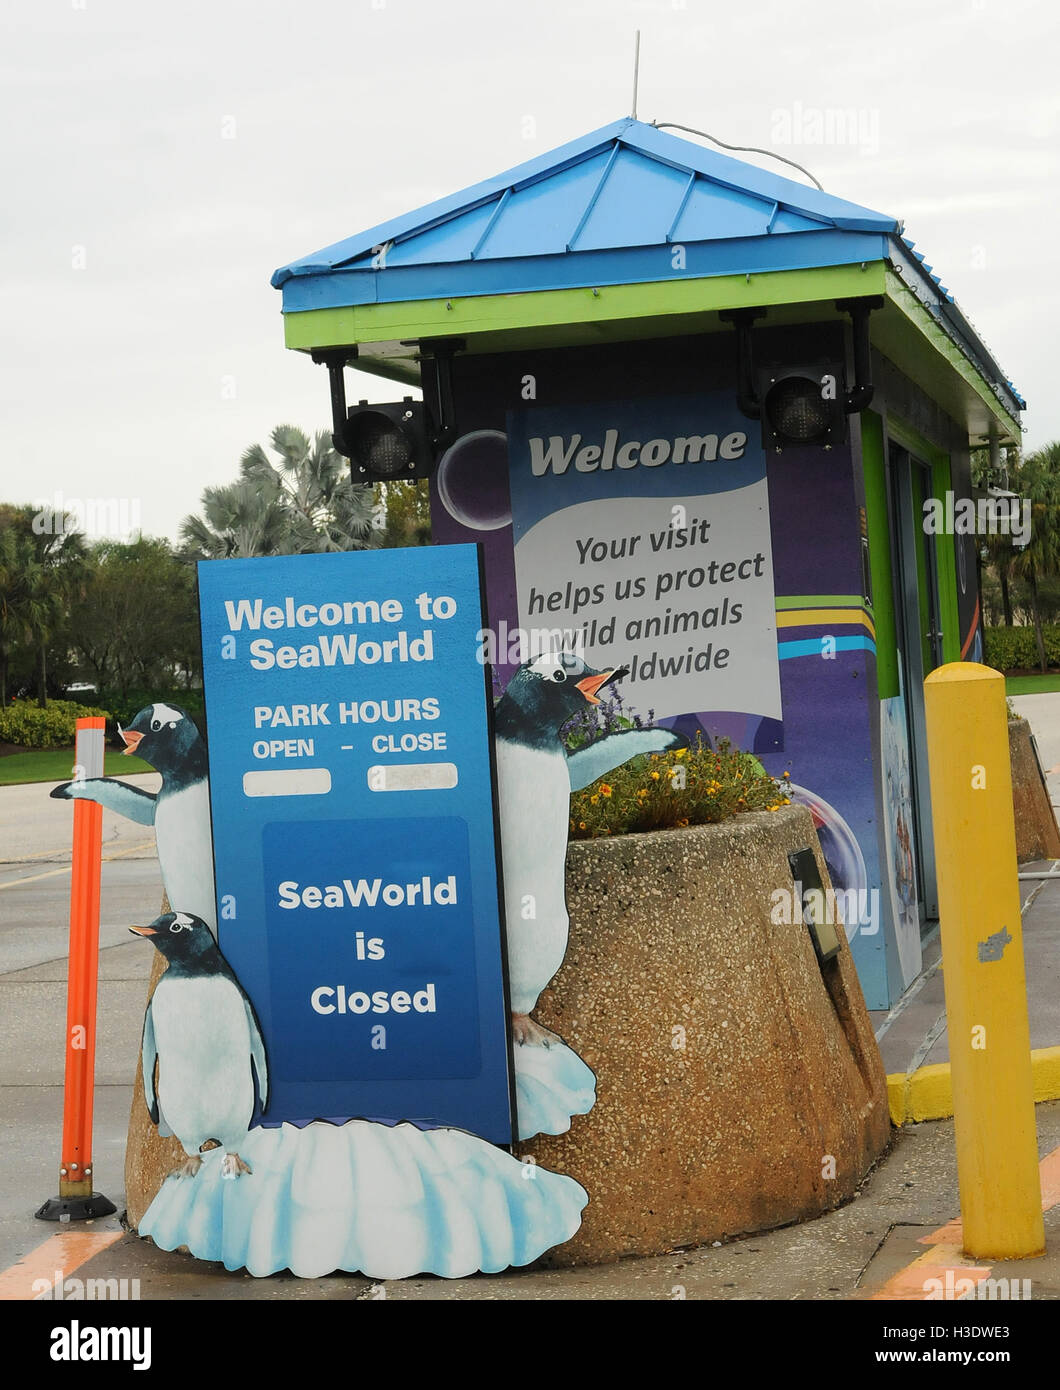 Orlando, Floride, USA. 6 octobre, 2016. Une billetterie à SeaWorld Orlando est vu fermé à 2:00 heures, le 6 octobre 2016 que l'Ouragan Matthew approché le centre de la Floride. Le parc à thème sera fermé le vendredi 7 octobre comme la tempête de catégorie 4 apporte des vents violents de la région d'Orlando. Walt Disney World a annoncé qu'il sera aussi proche de demain. Crédit : Paul Hennessy/Alamy Live News Banque D'Images